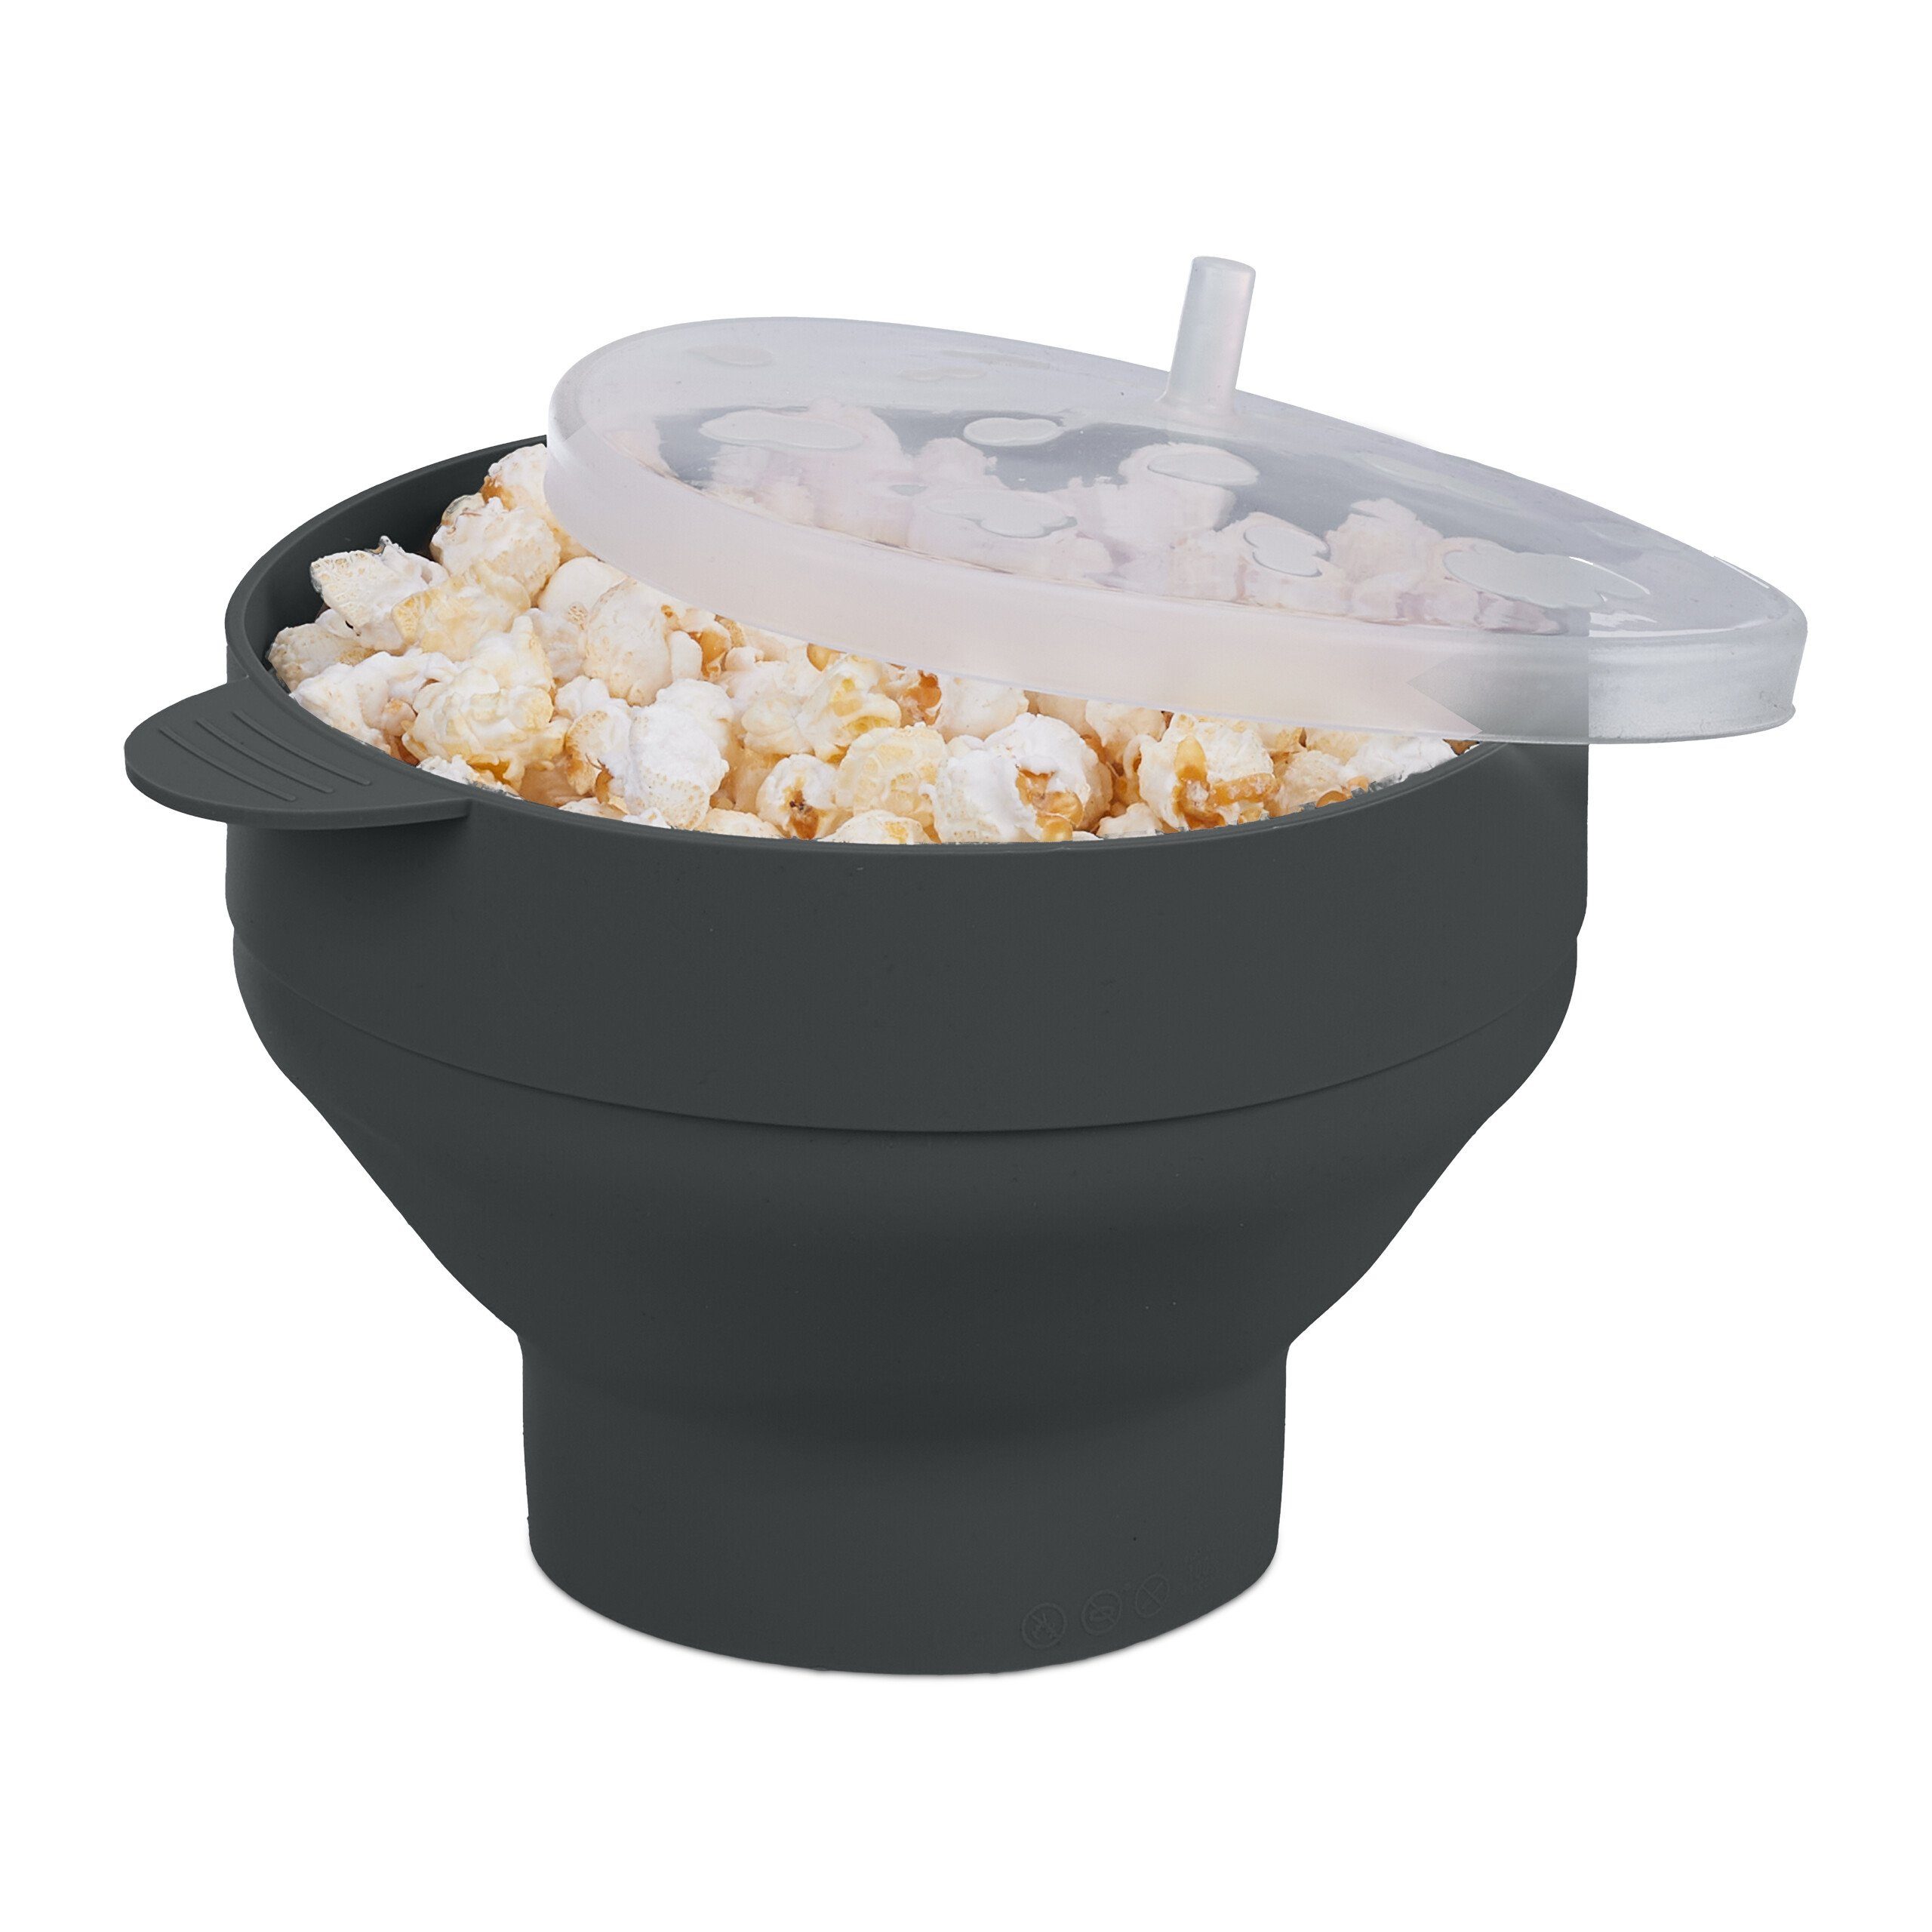 relaxdays Schüssel Popcorn Maker für Mikrowelle, Silikon, Schwarz Schwarz Transparent